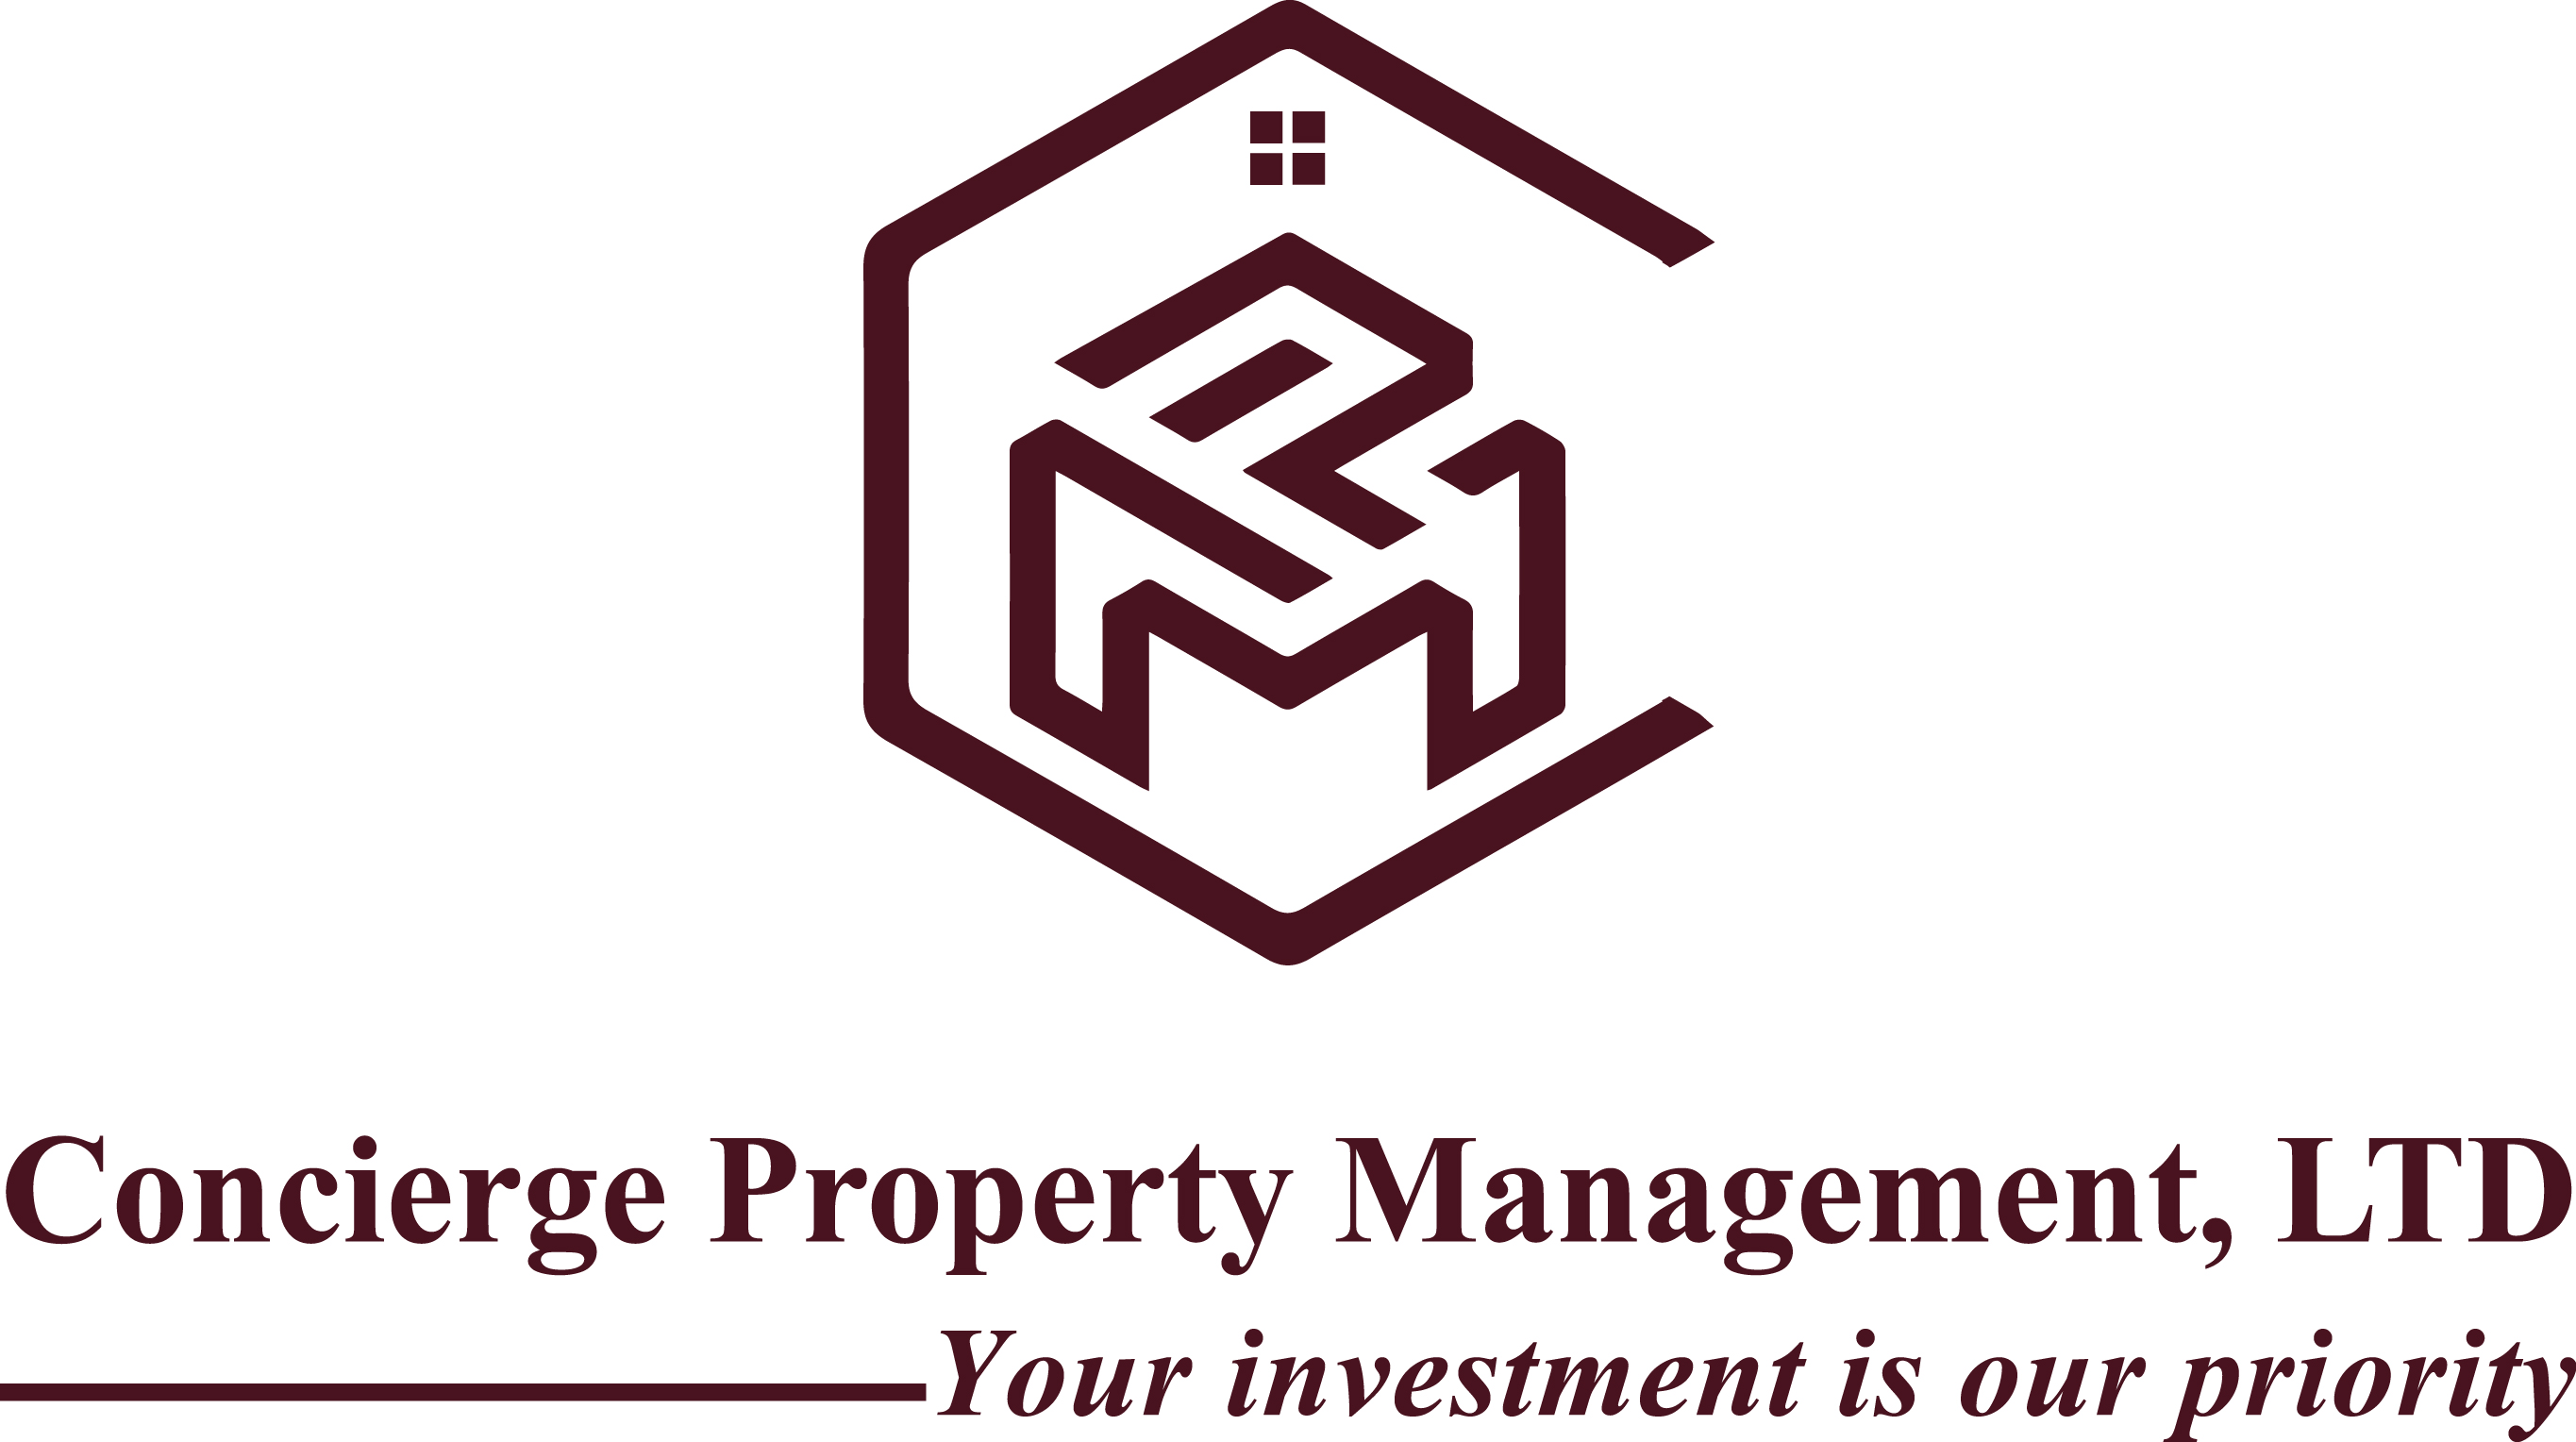 Concierge Property Management, LTD